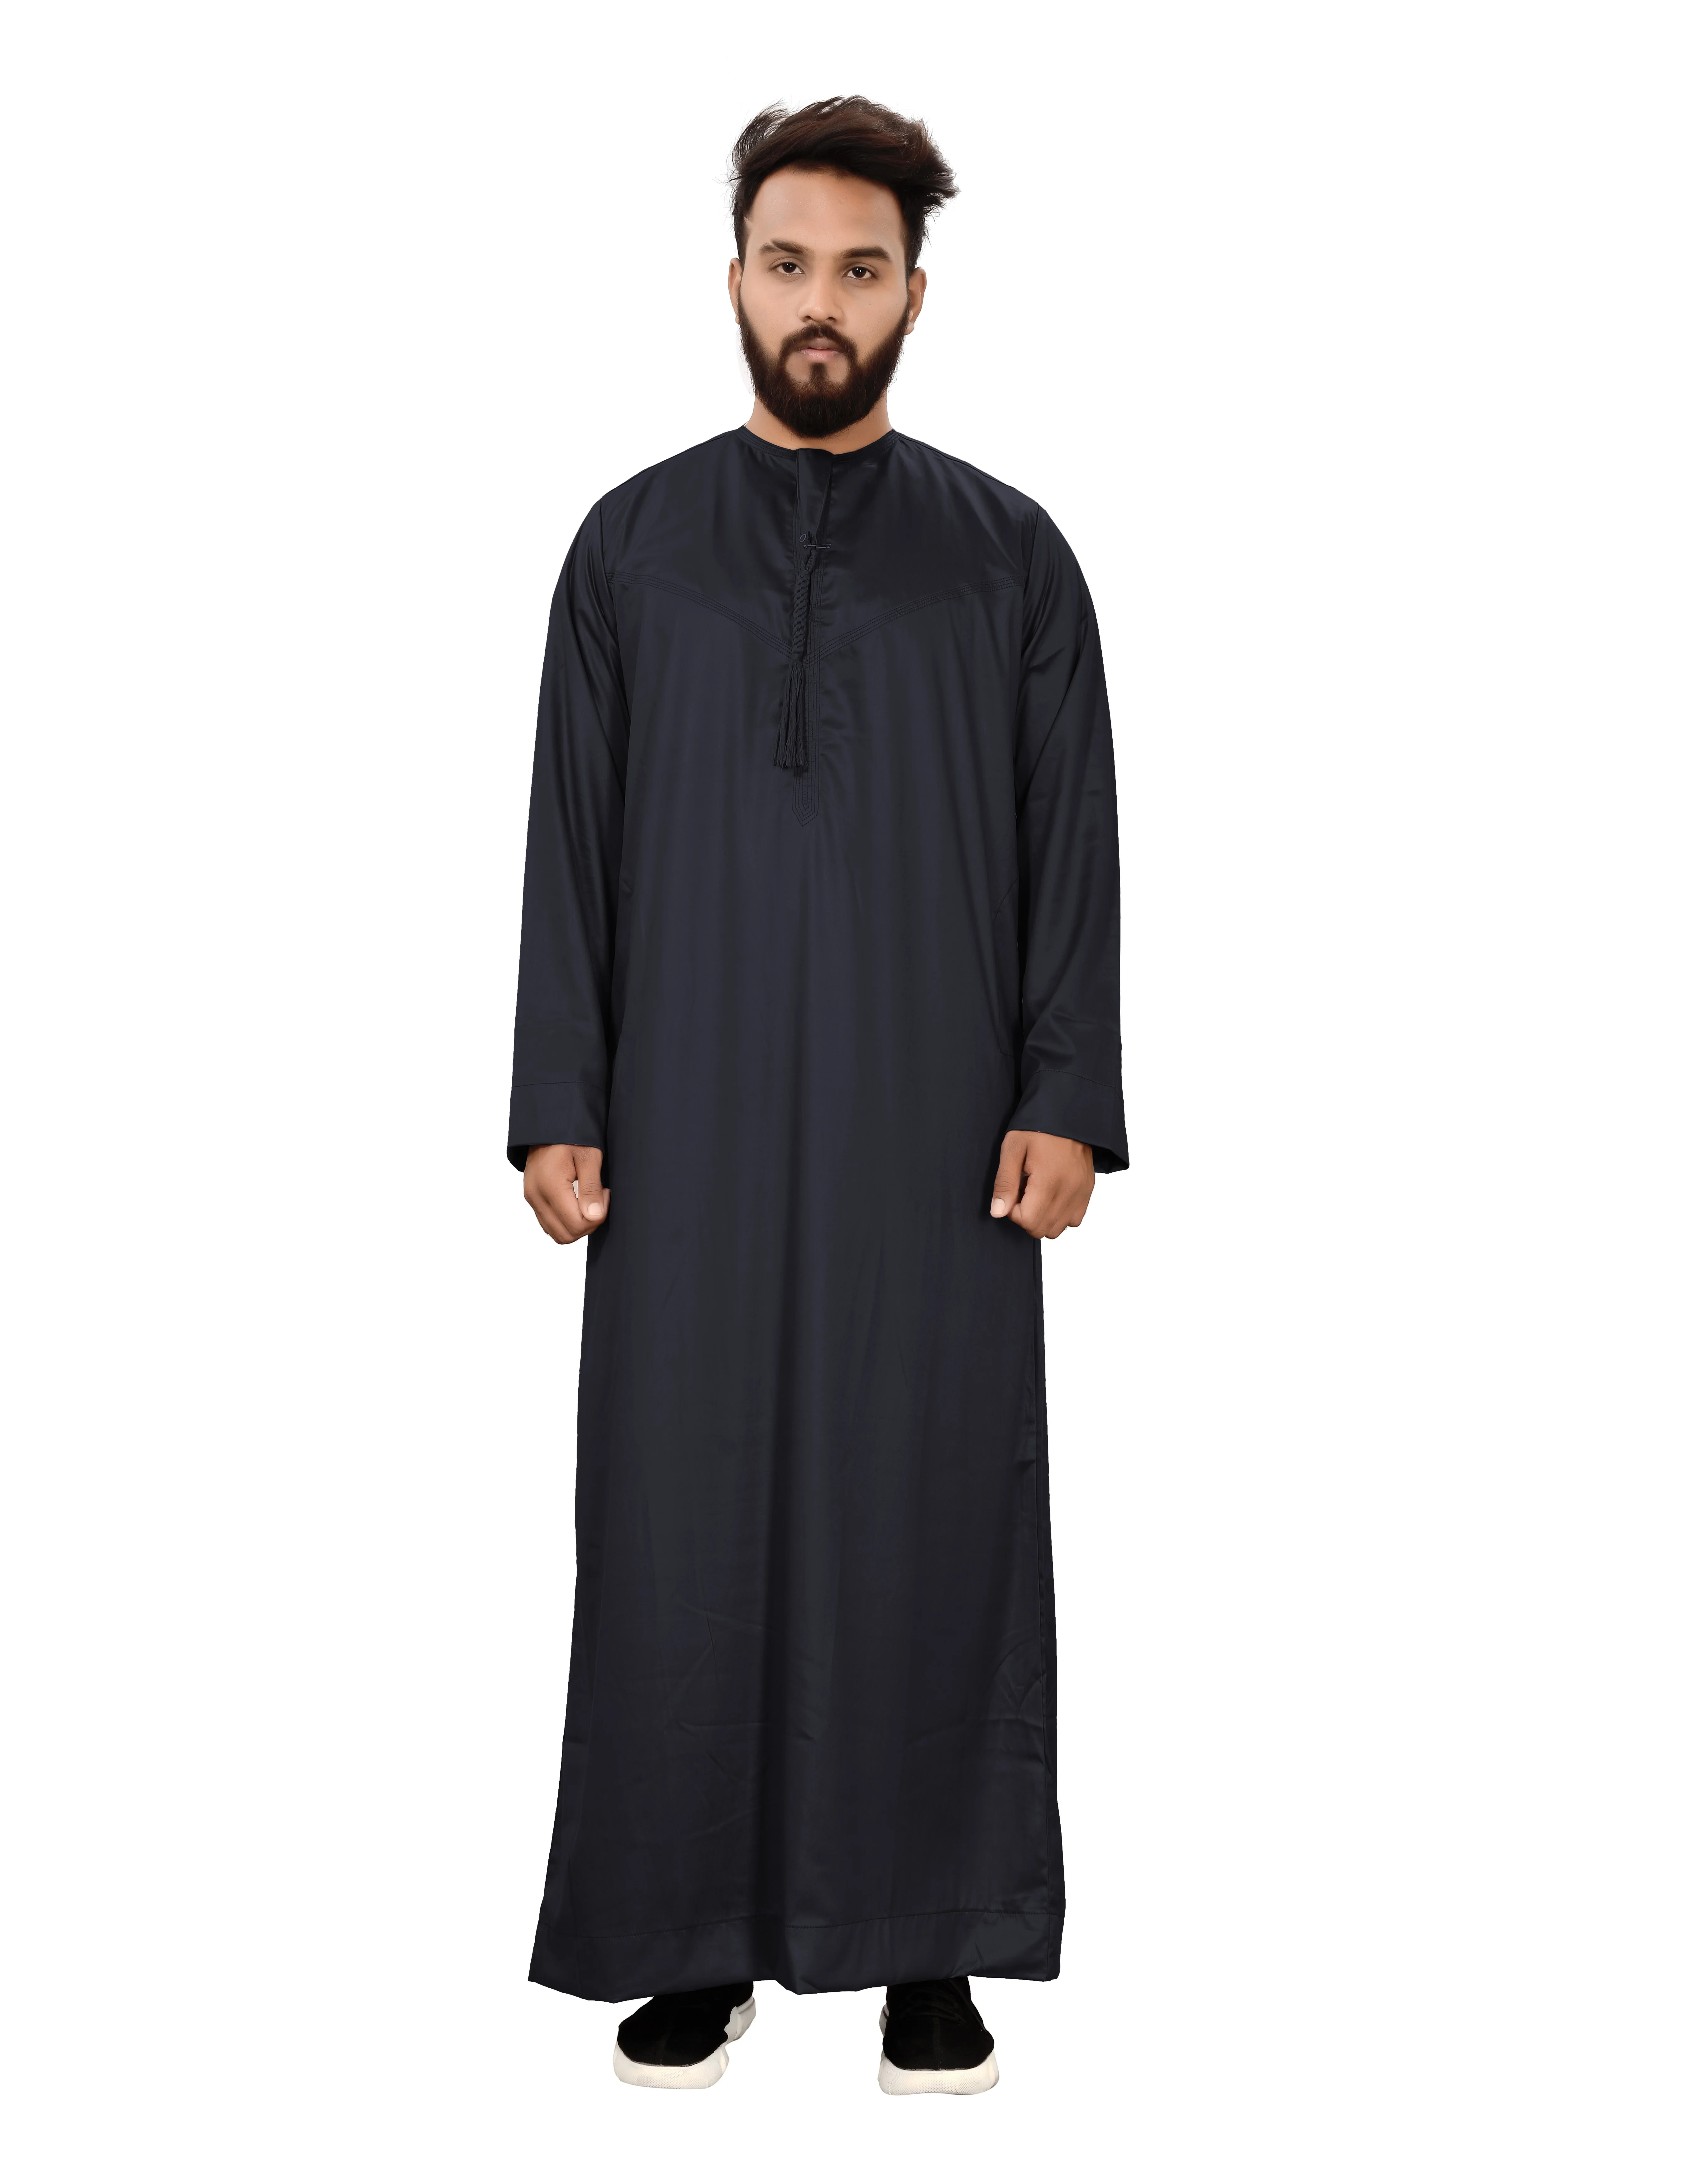 Man Boy Saudi Thobe Robe Islamic Muslim Jubba Arabic Kaftan Abaya Jelbab Dress 